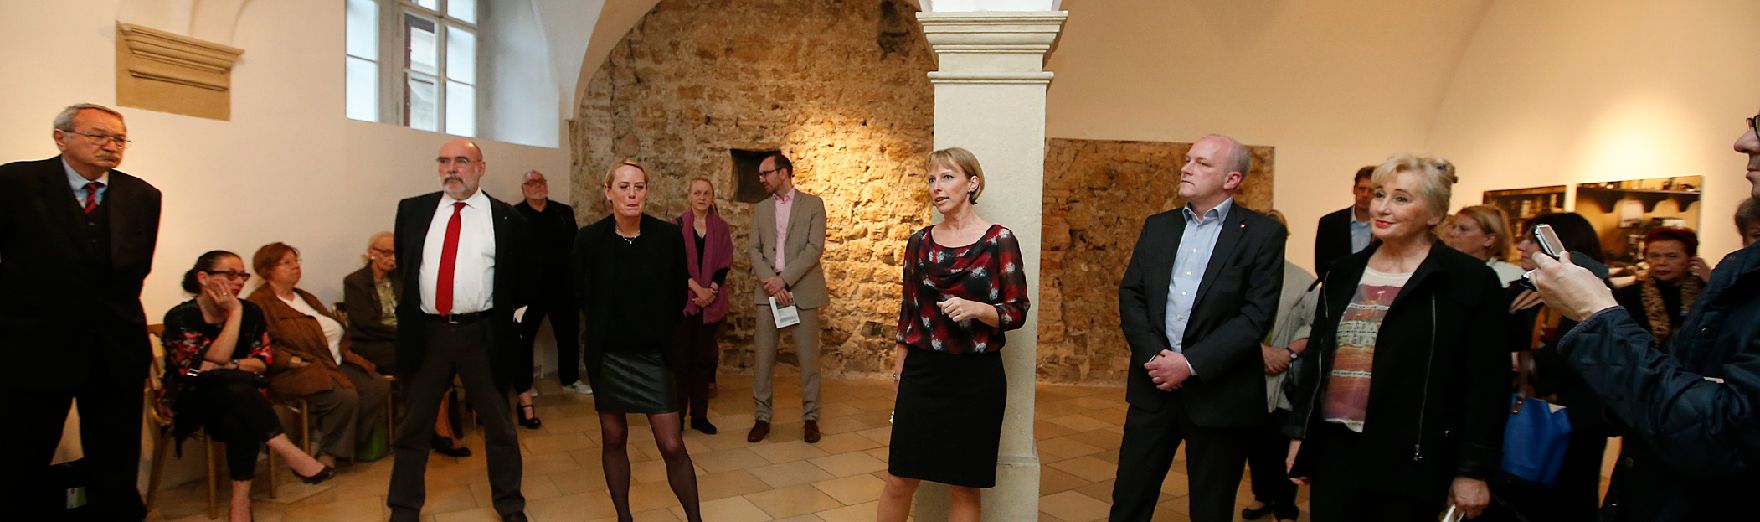 Am 15. April 2015 eröffnete Bereichsleiterin im Bundeskanzleramt, Nicole Bayer die Ausstellung "14 x 14 - Vermessung des Donauraumes. Positionen aktueller Kunst. Momentaufnahmen" im Palais Porcia.